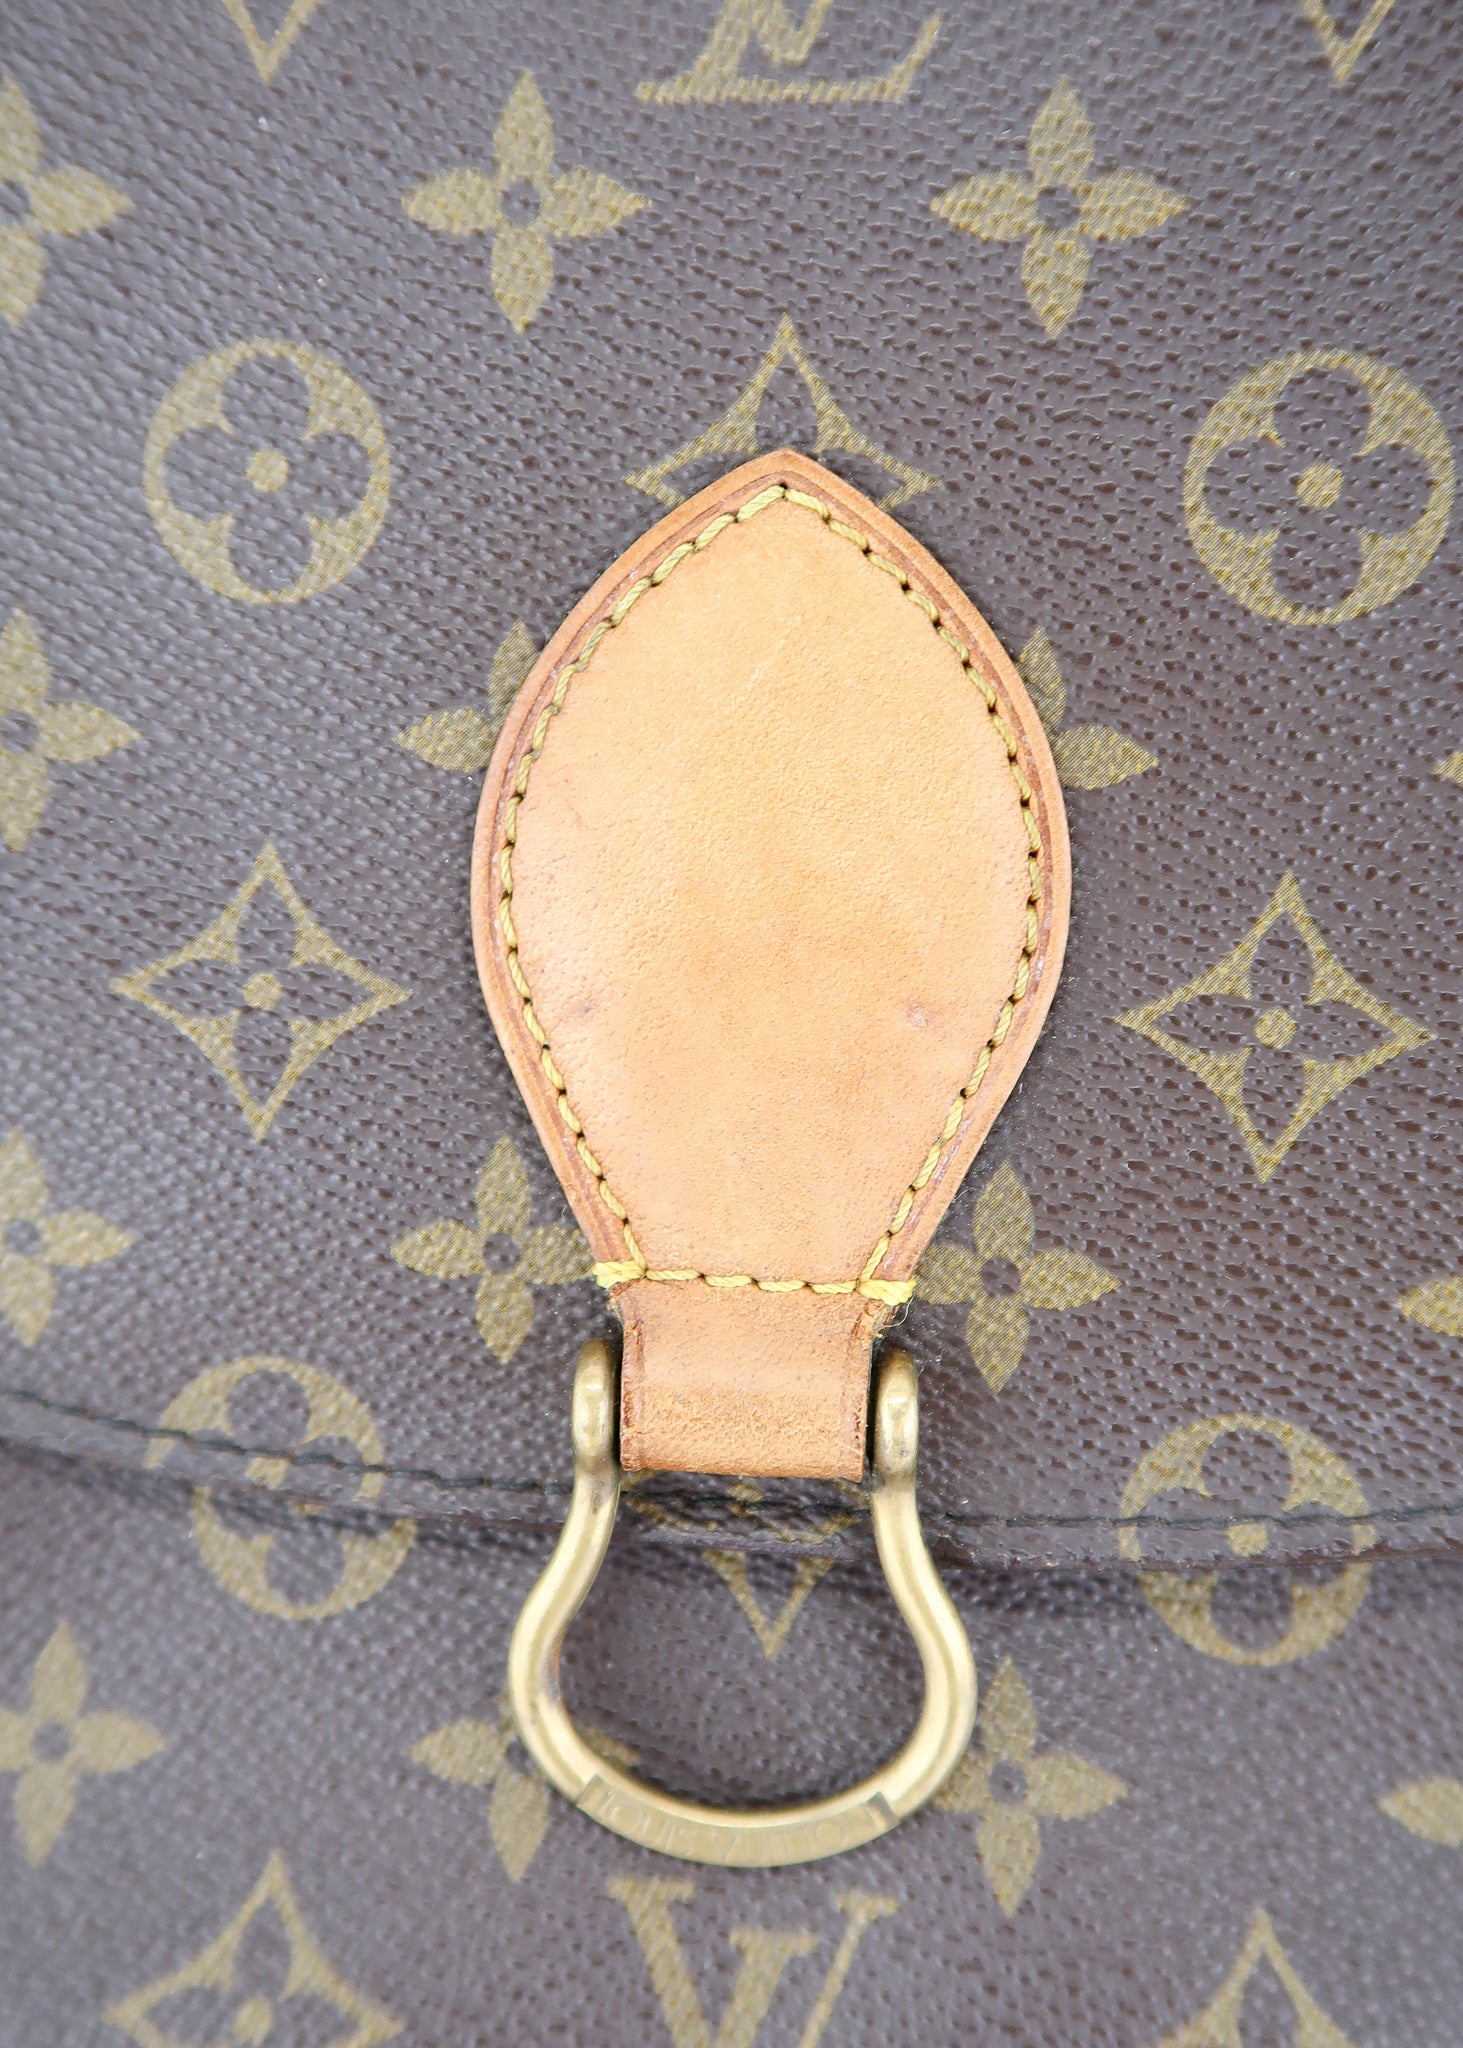 Lois Vuitton Saint Cloud Bag Authentic Vintage Louis VUITTON 